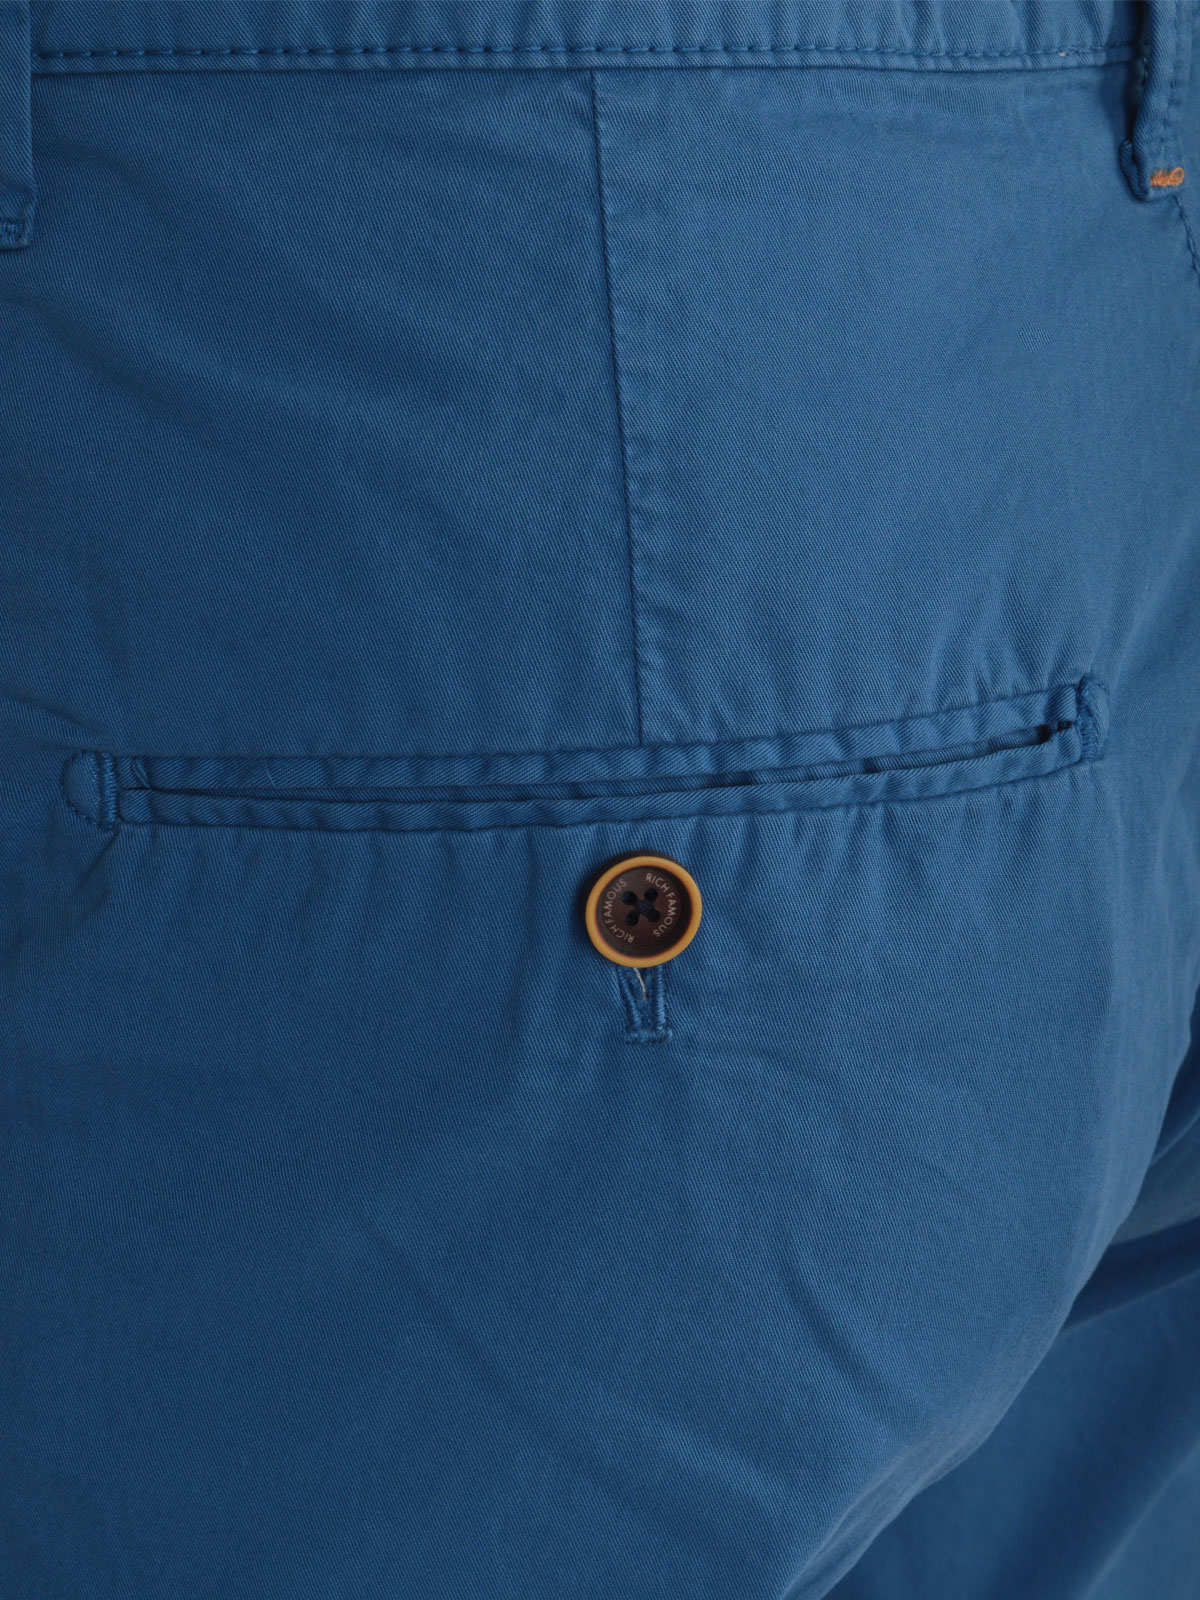 Къс панталон в цвят син парламент - 67071 68.00 лв img2